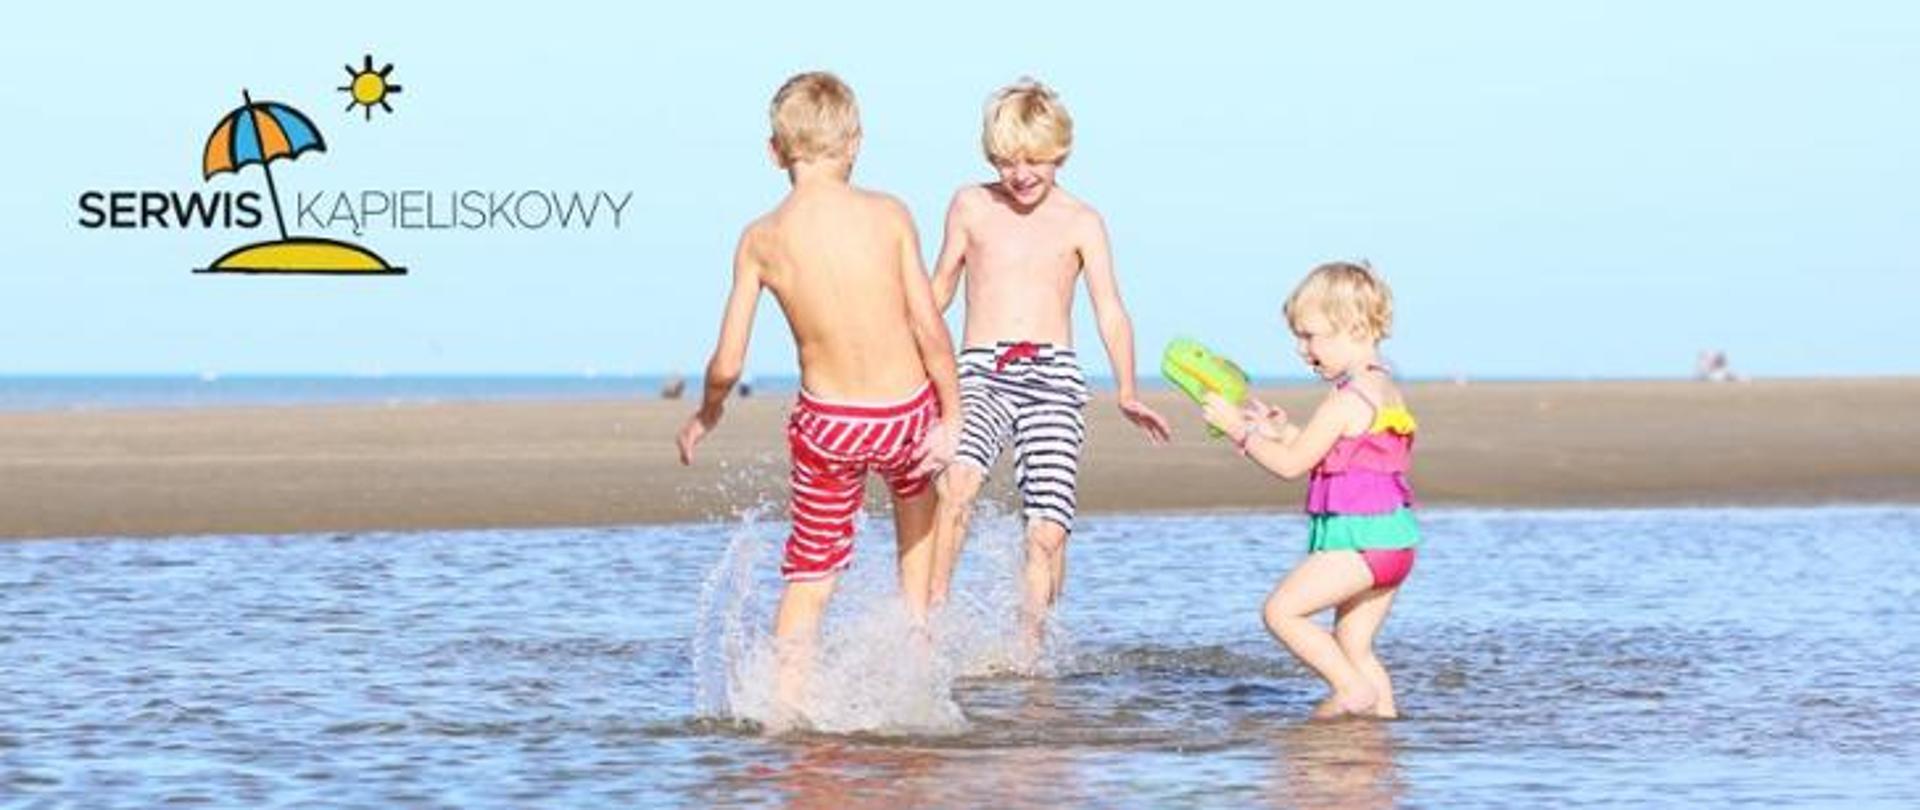 Dzieci w strojach kąpielowych bawiące się w wodzie, najprawdopodobniej w morzu. Na dalszym tle widać piaszczystą plażę.